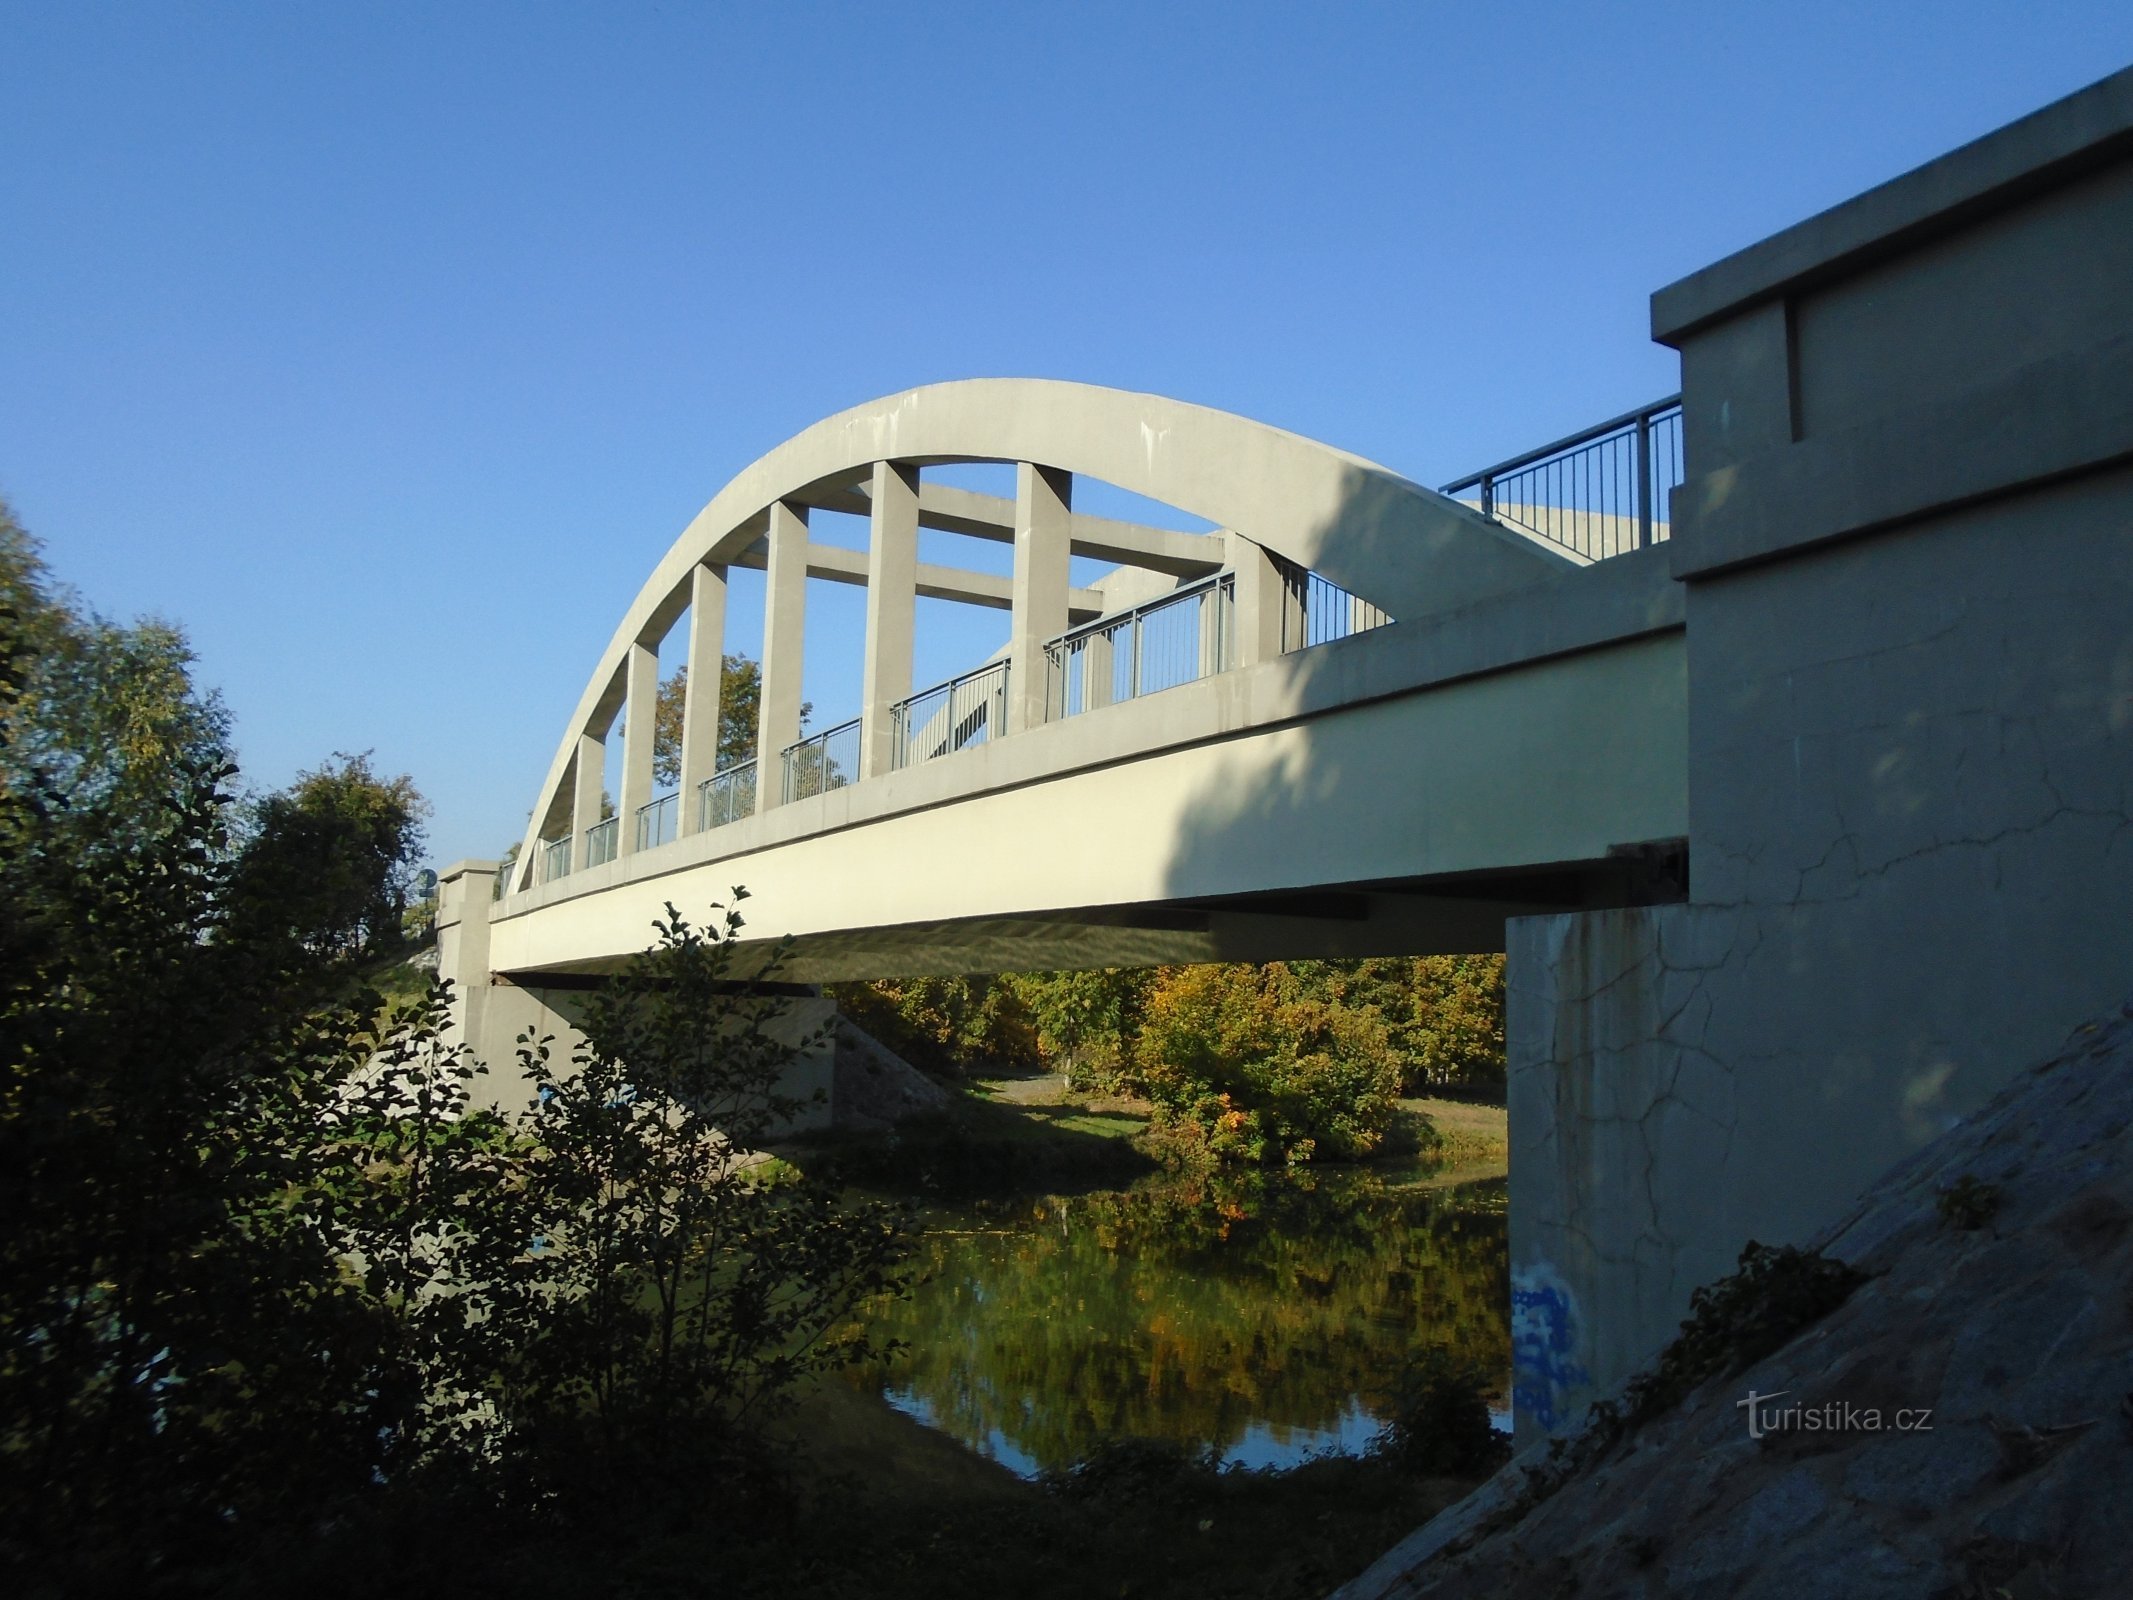 Ponte sobre o Elba (Černožice, 10.10.2018/XNUMX/XNUMX)